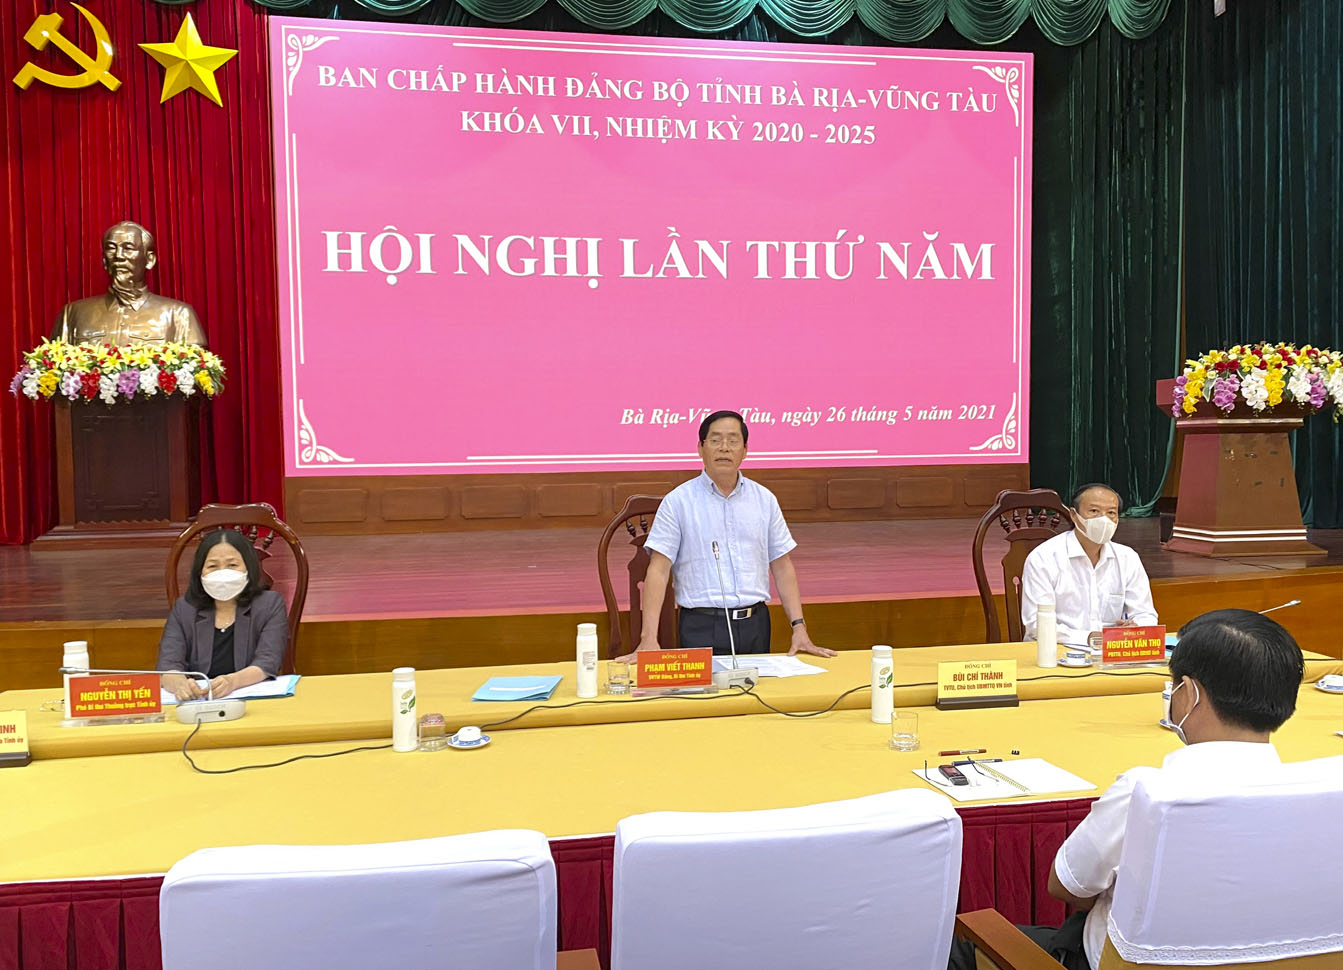 Đồng chí Phạm Viết Thanh, Ủy viên Trung ương Đảng, Bí thư Tỉnh ủy phát biểu khai mạc Hội nghị.